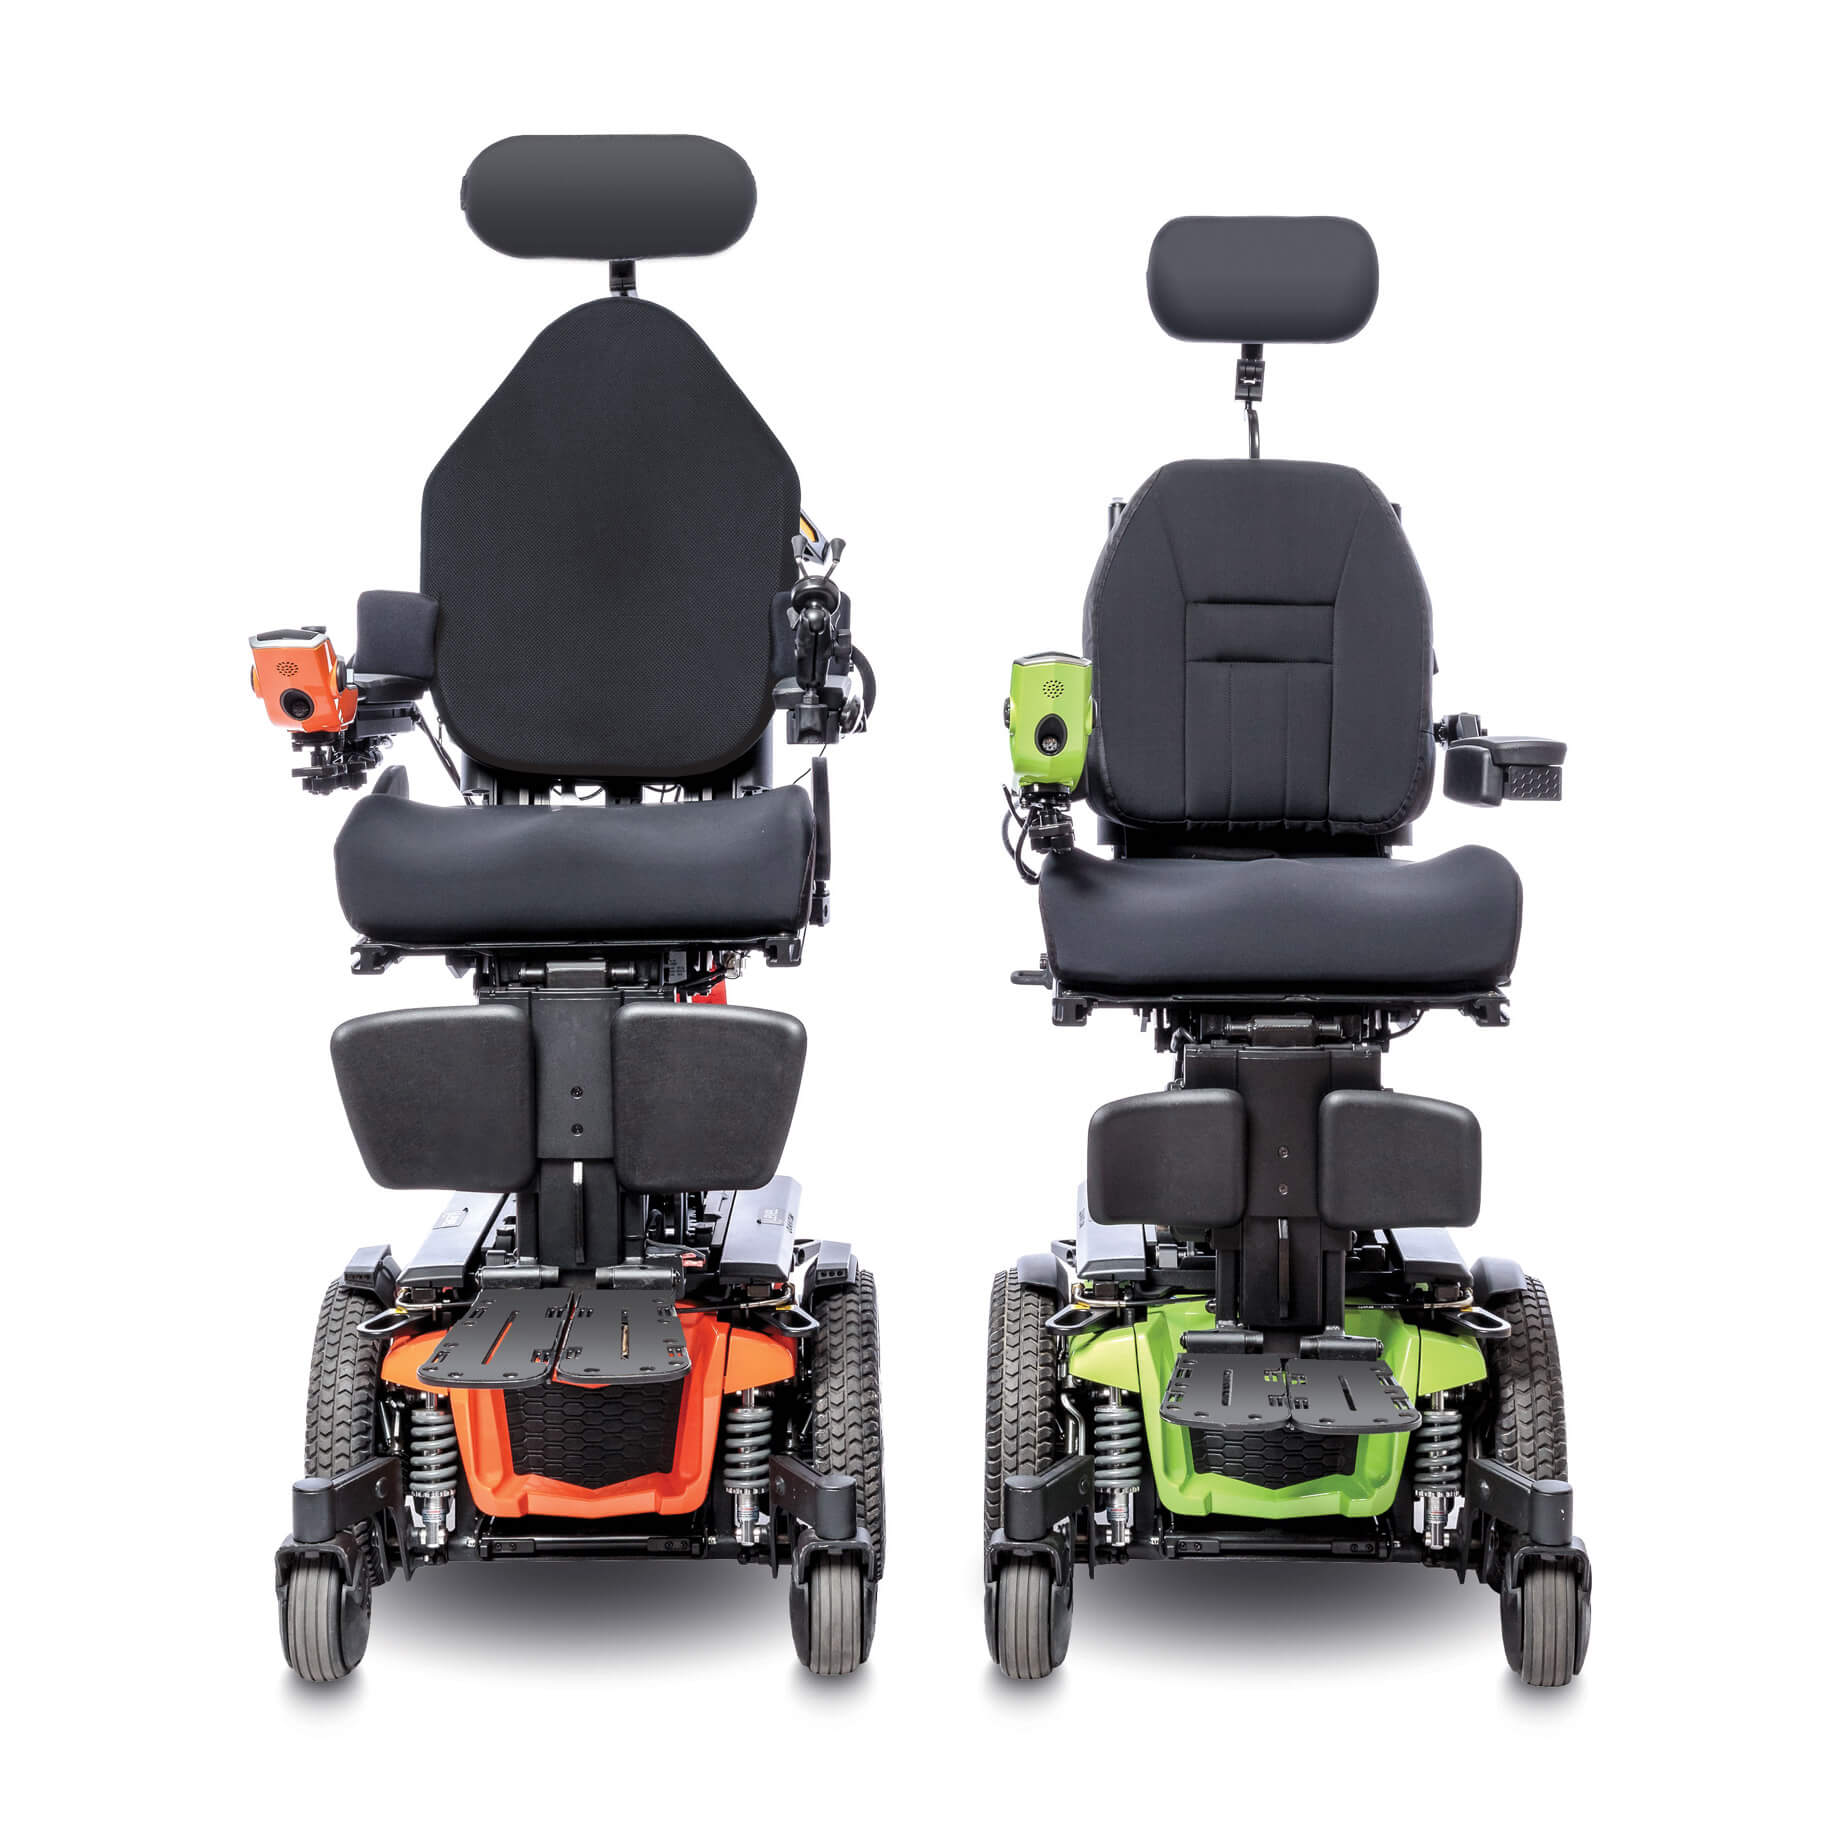 The Quantum Q6 2.0 Edge electric wheelchair